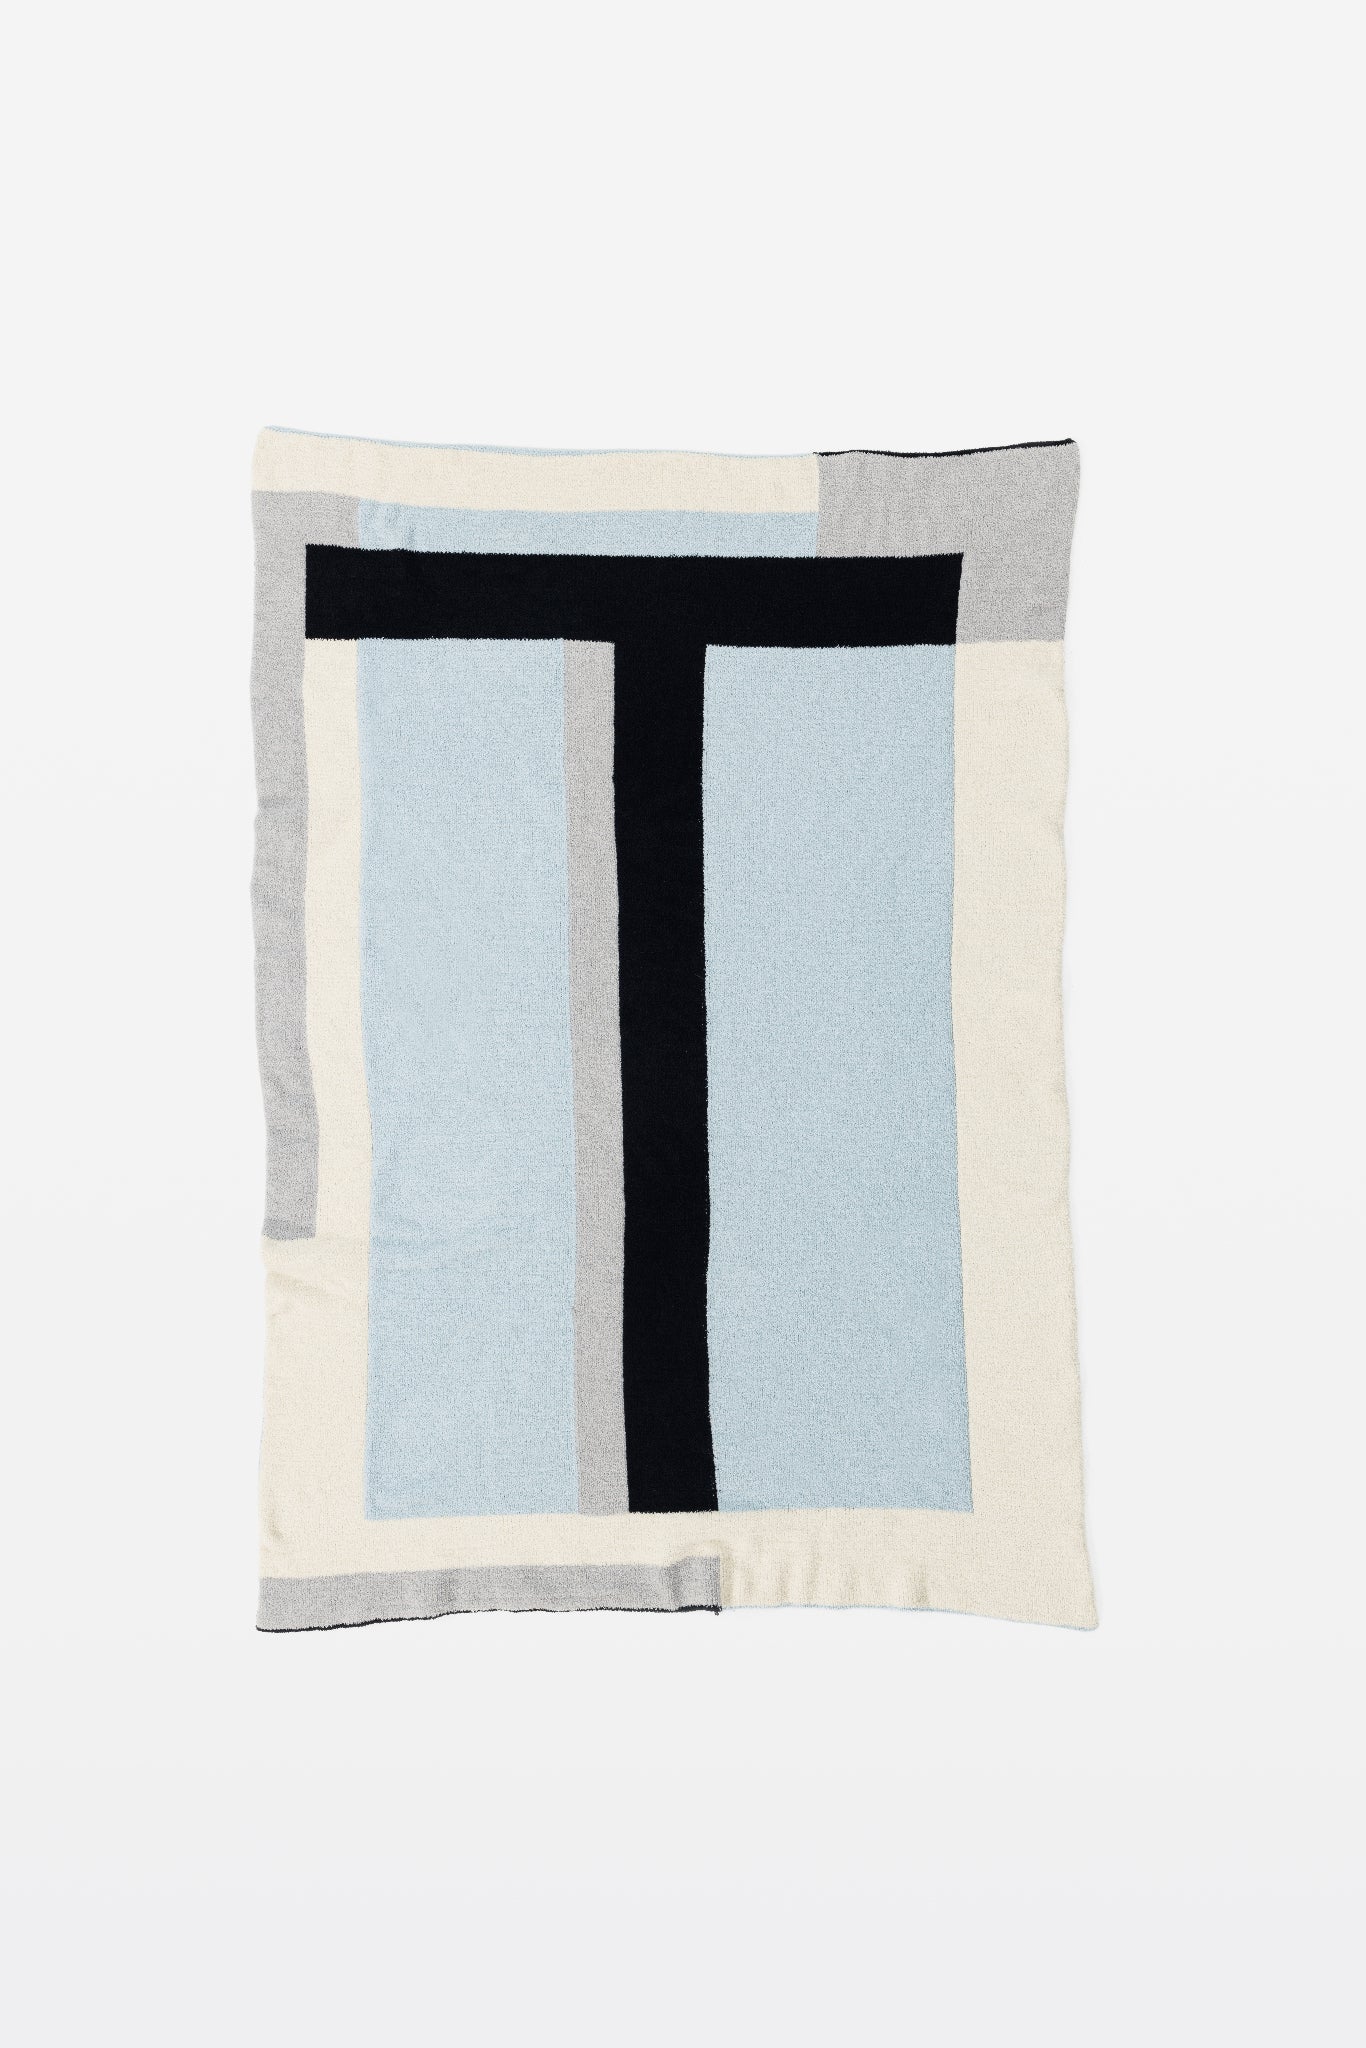 Talos Soft Plush Throw Blanket - Throw - Touchofgod.co